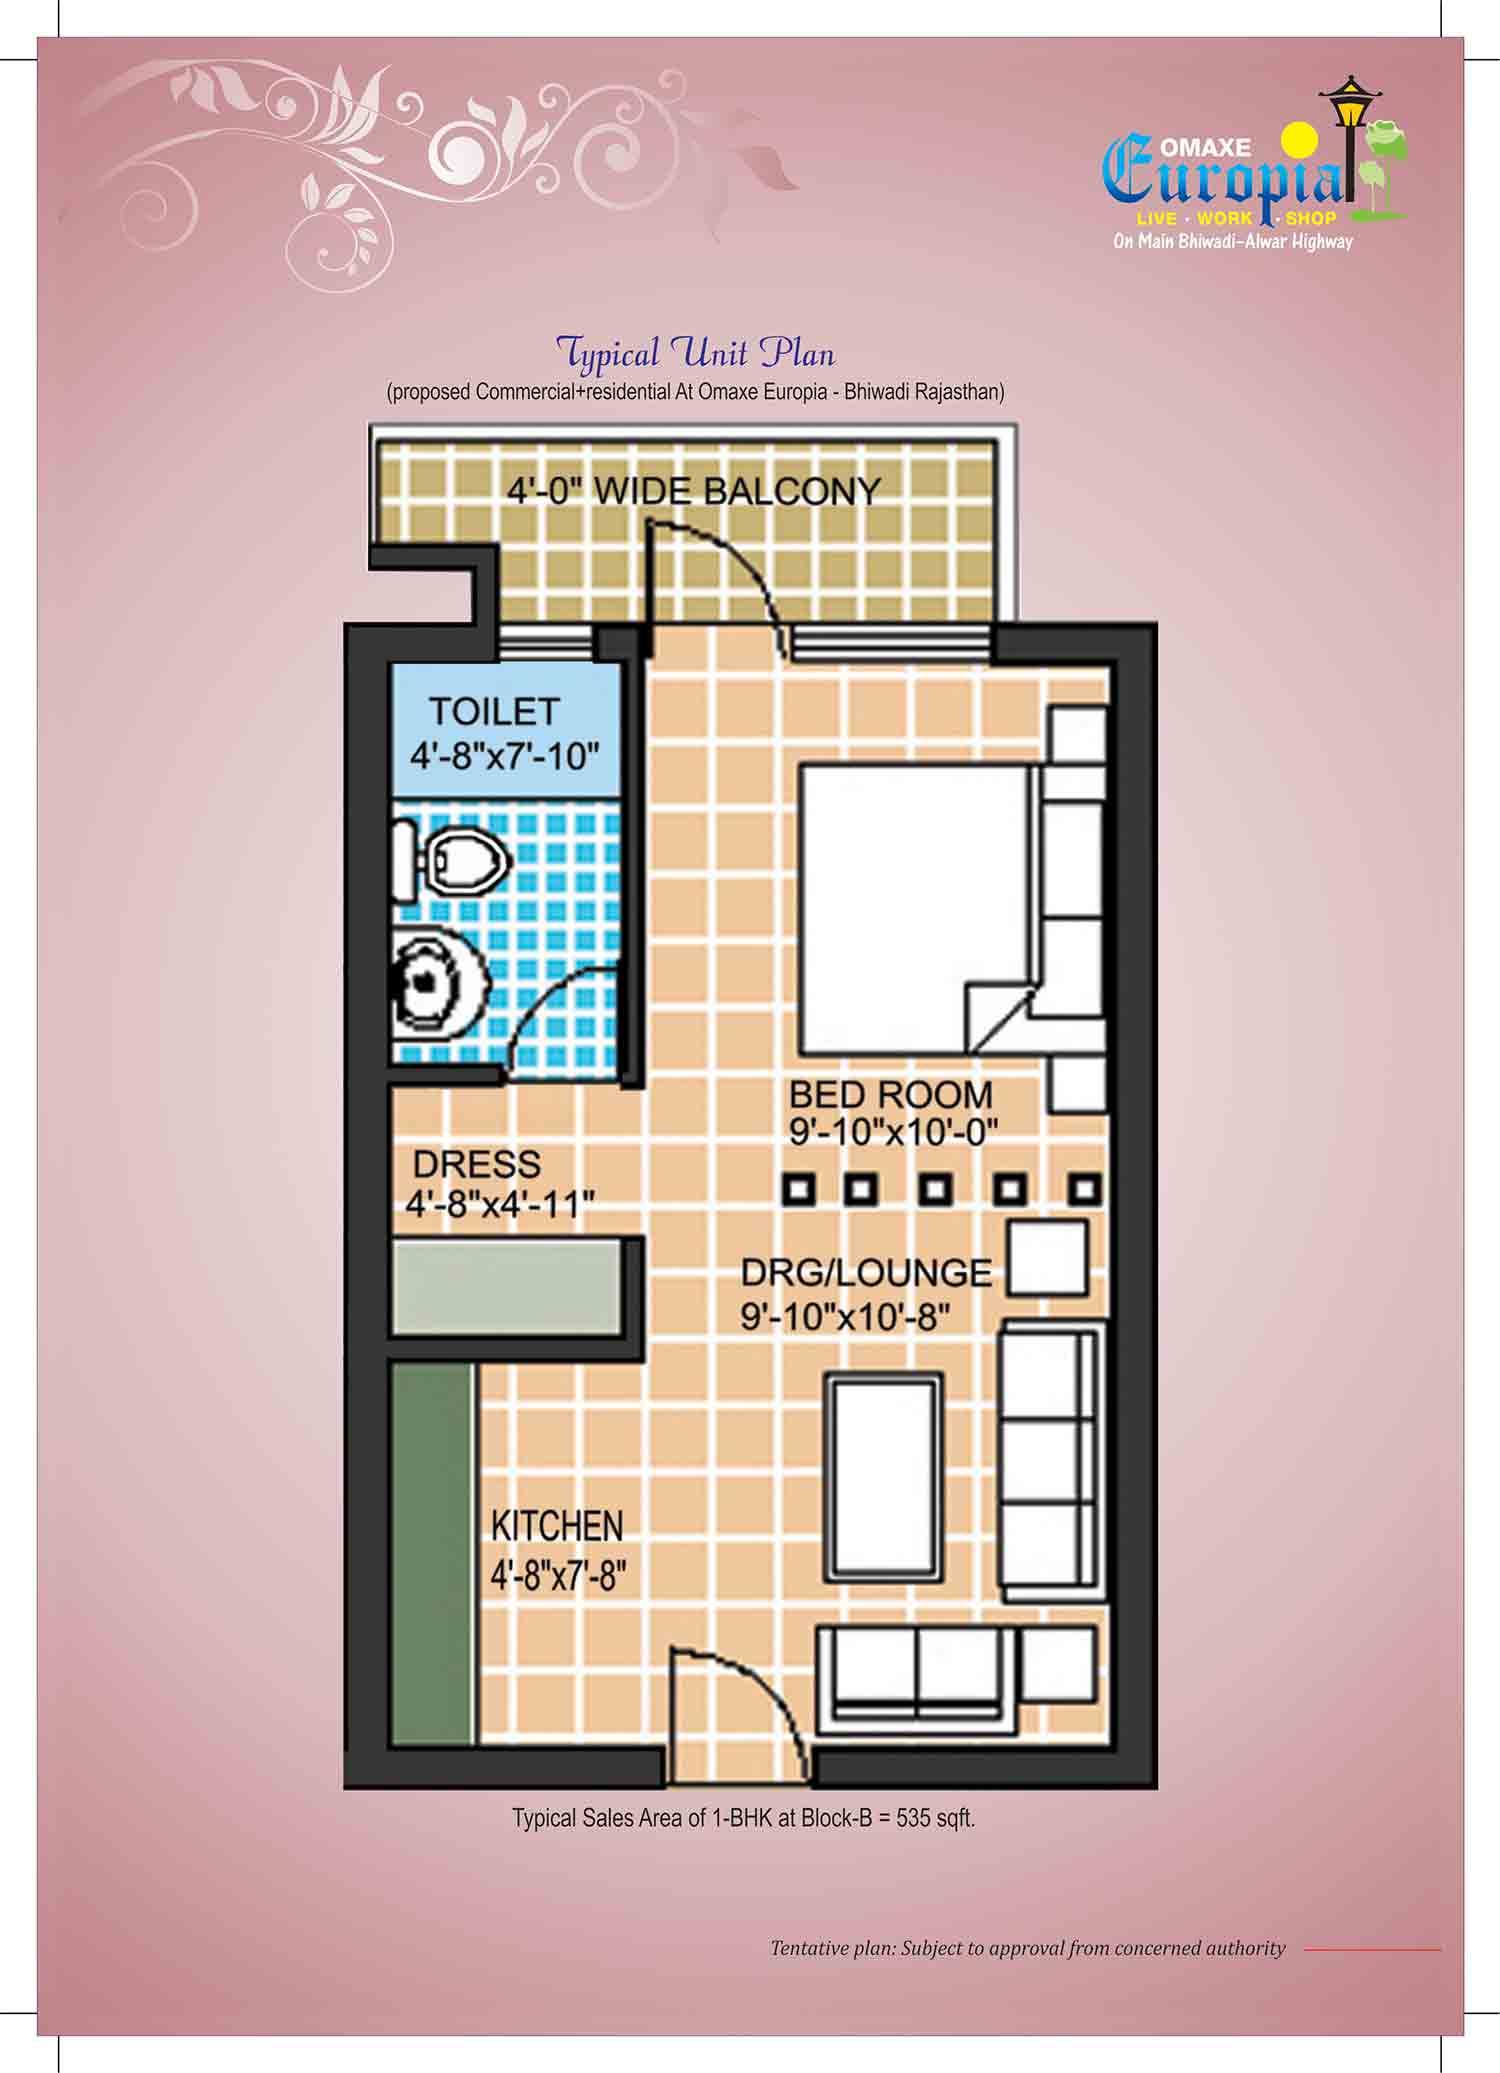 Typical Floor Plan - Block B